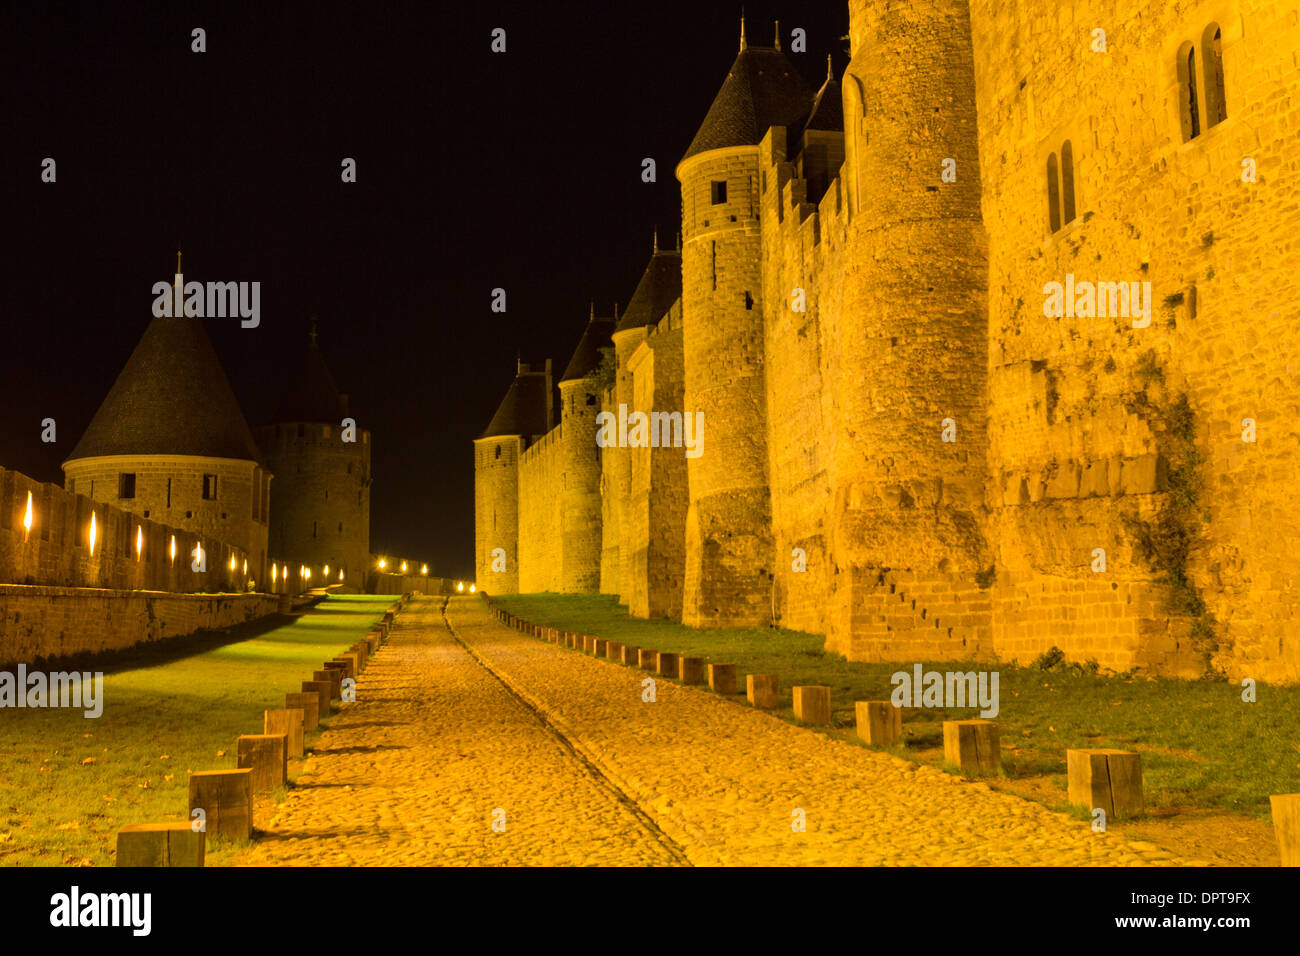 Les fortifications médiévales de l'ancienne citadelle de Carcassonne au sud-ouest de la France Banque D'Images